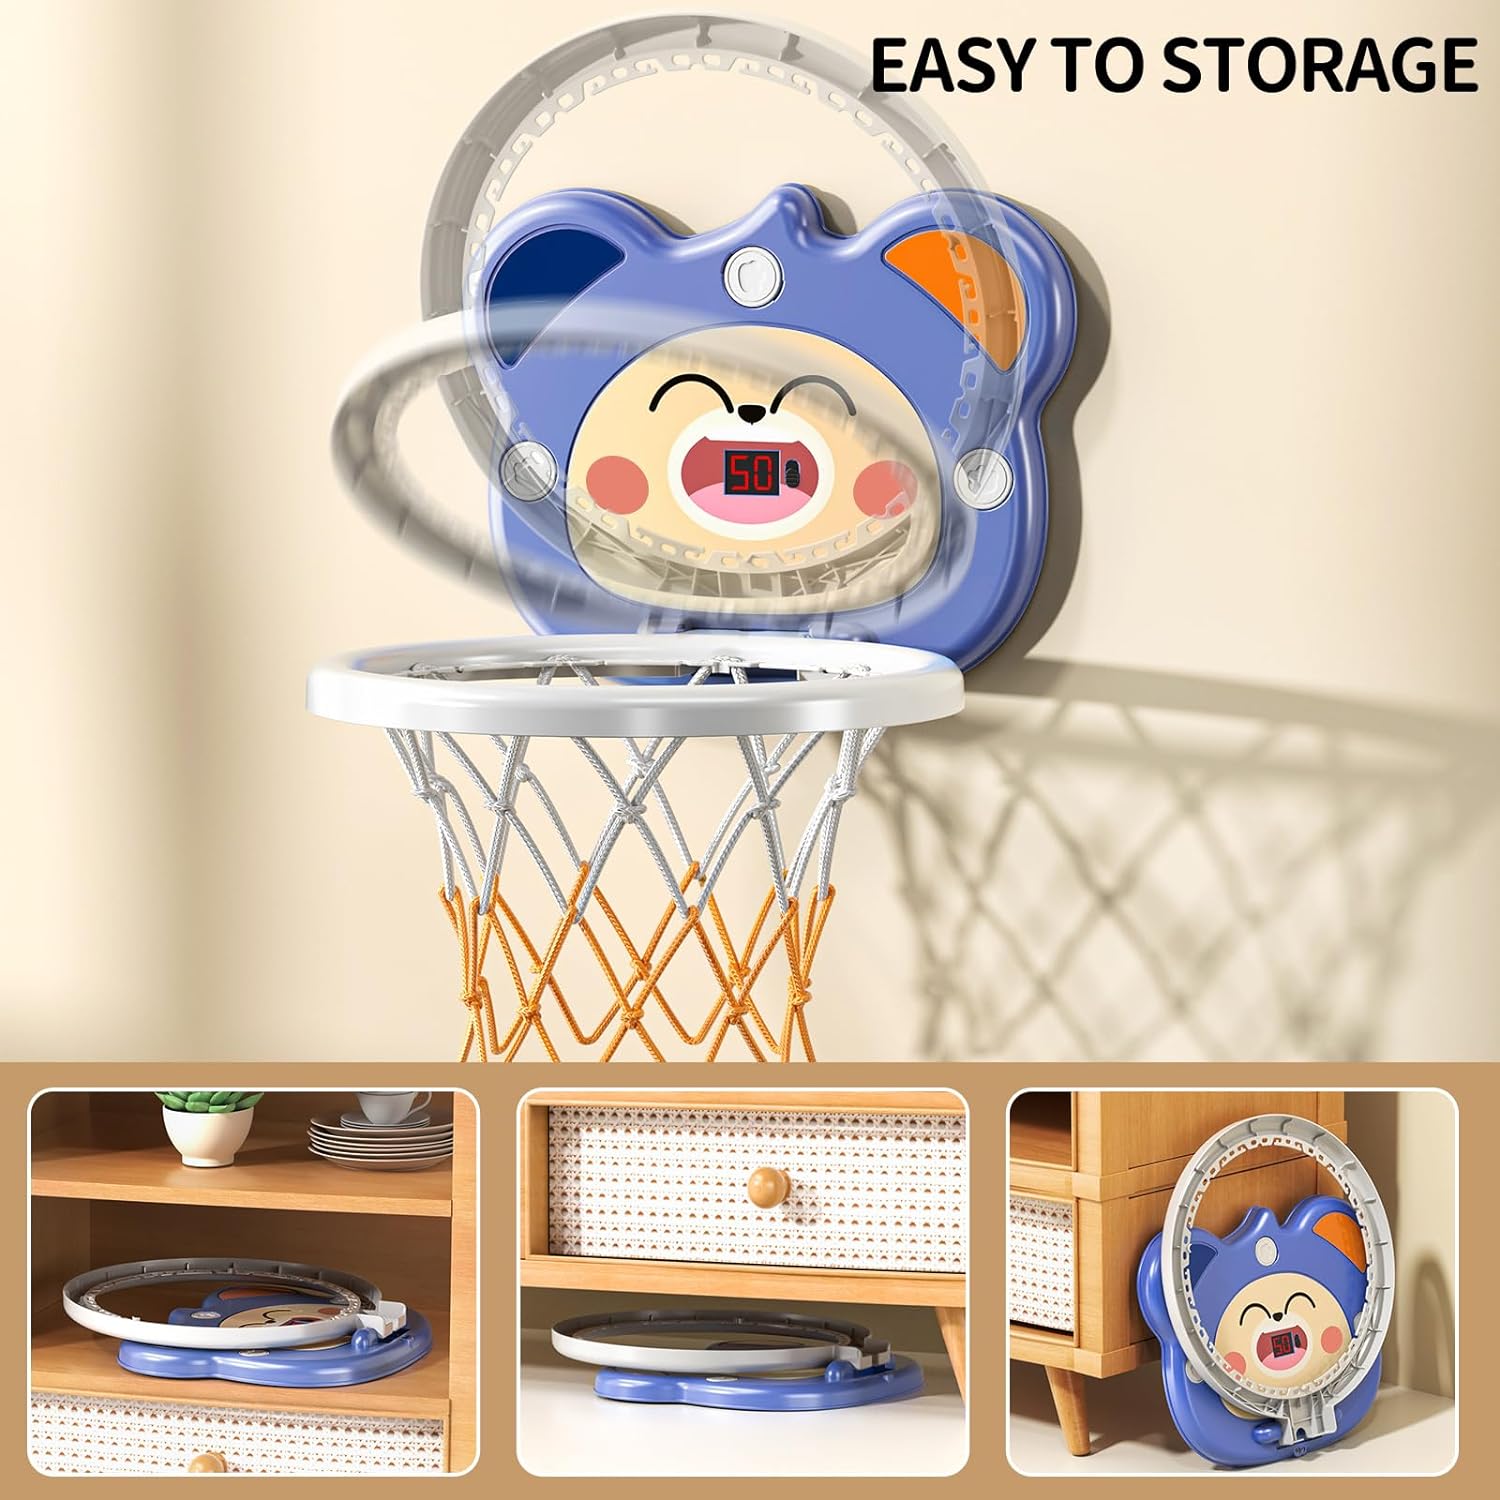 Indoor Mini Basketball Hoop for Toddlers Kids Boys - Cykapu